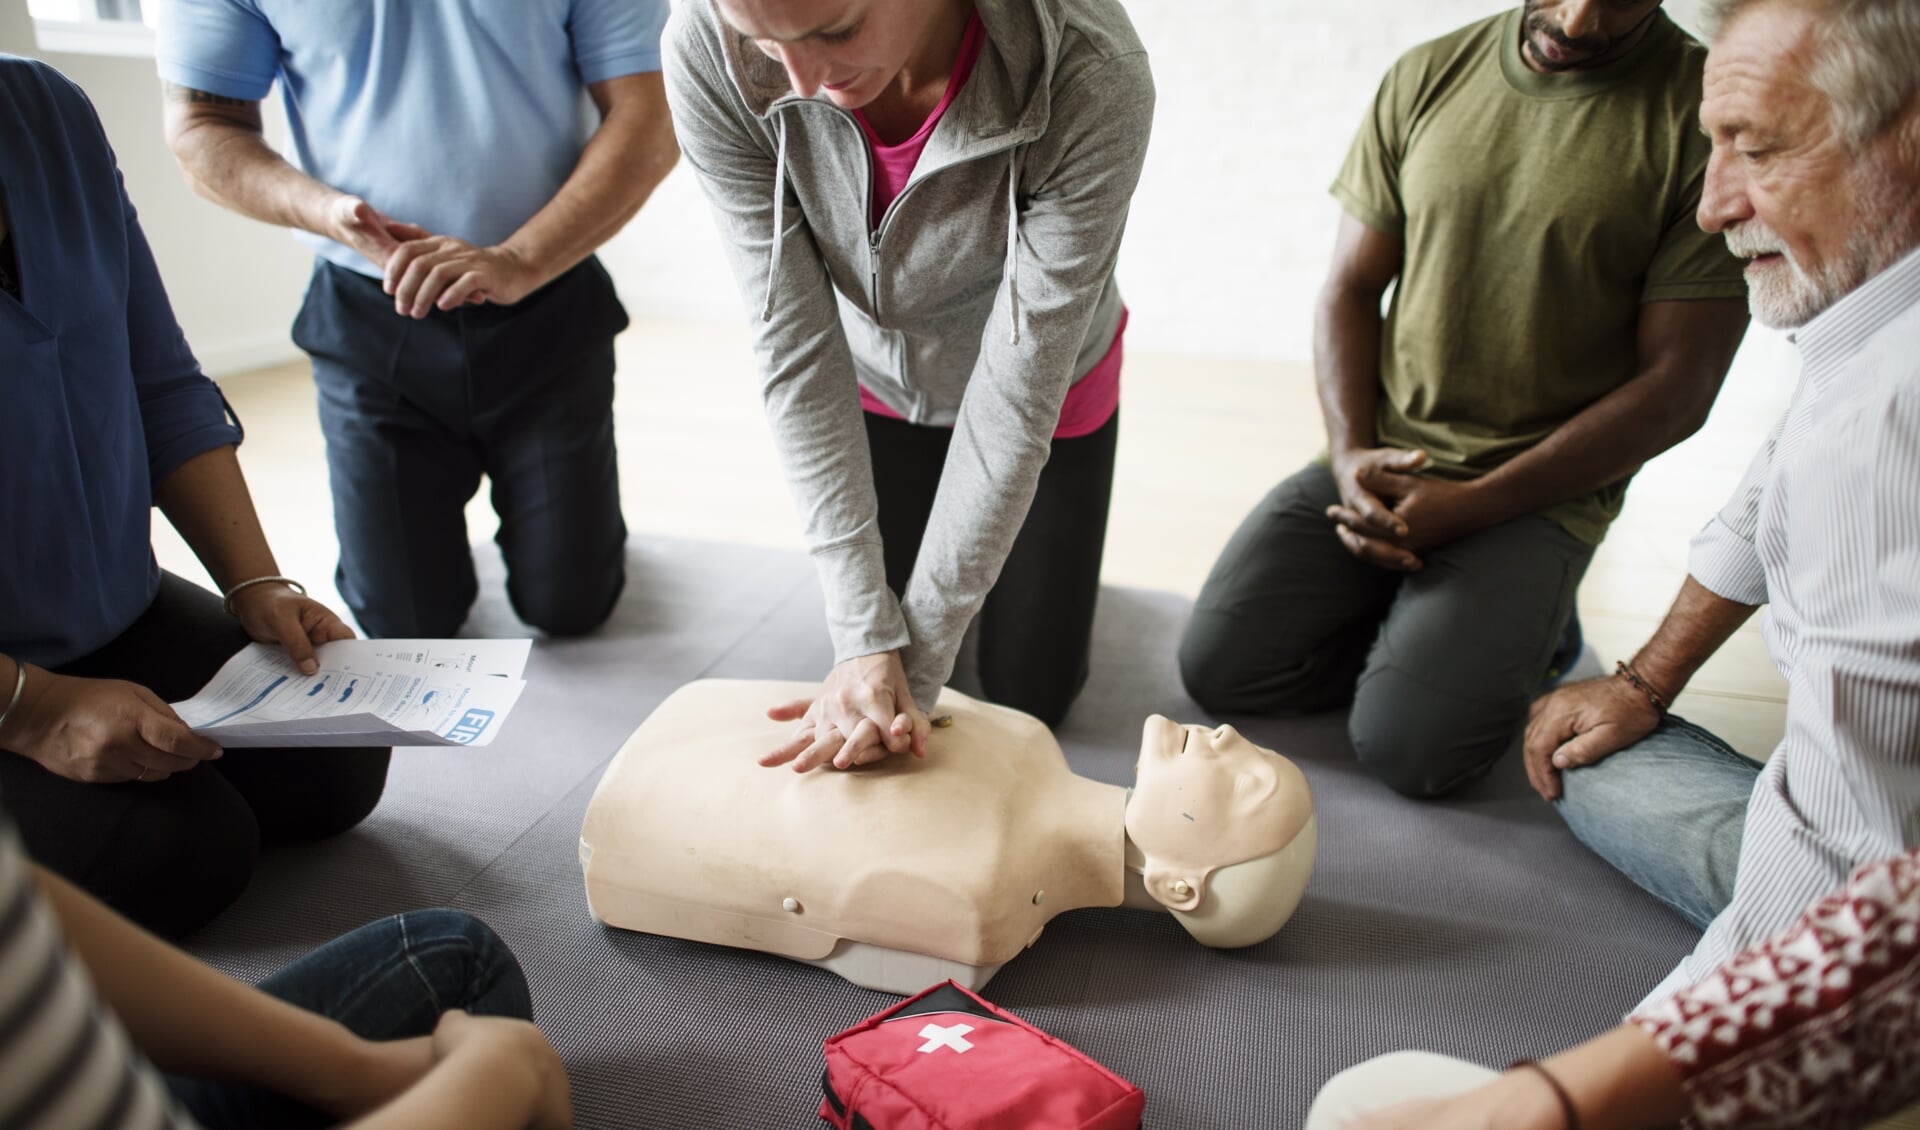 Naast de AED zelf is ook het kunnen reanimeren belangrijk om levens te redden.